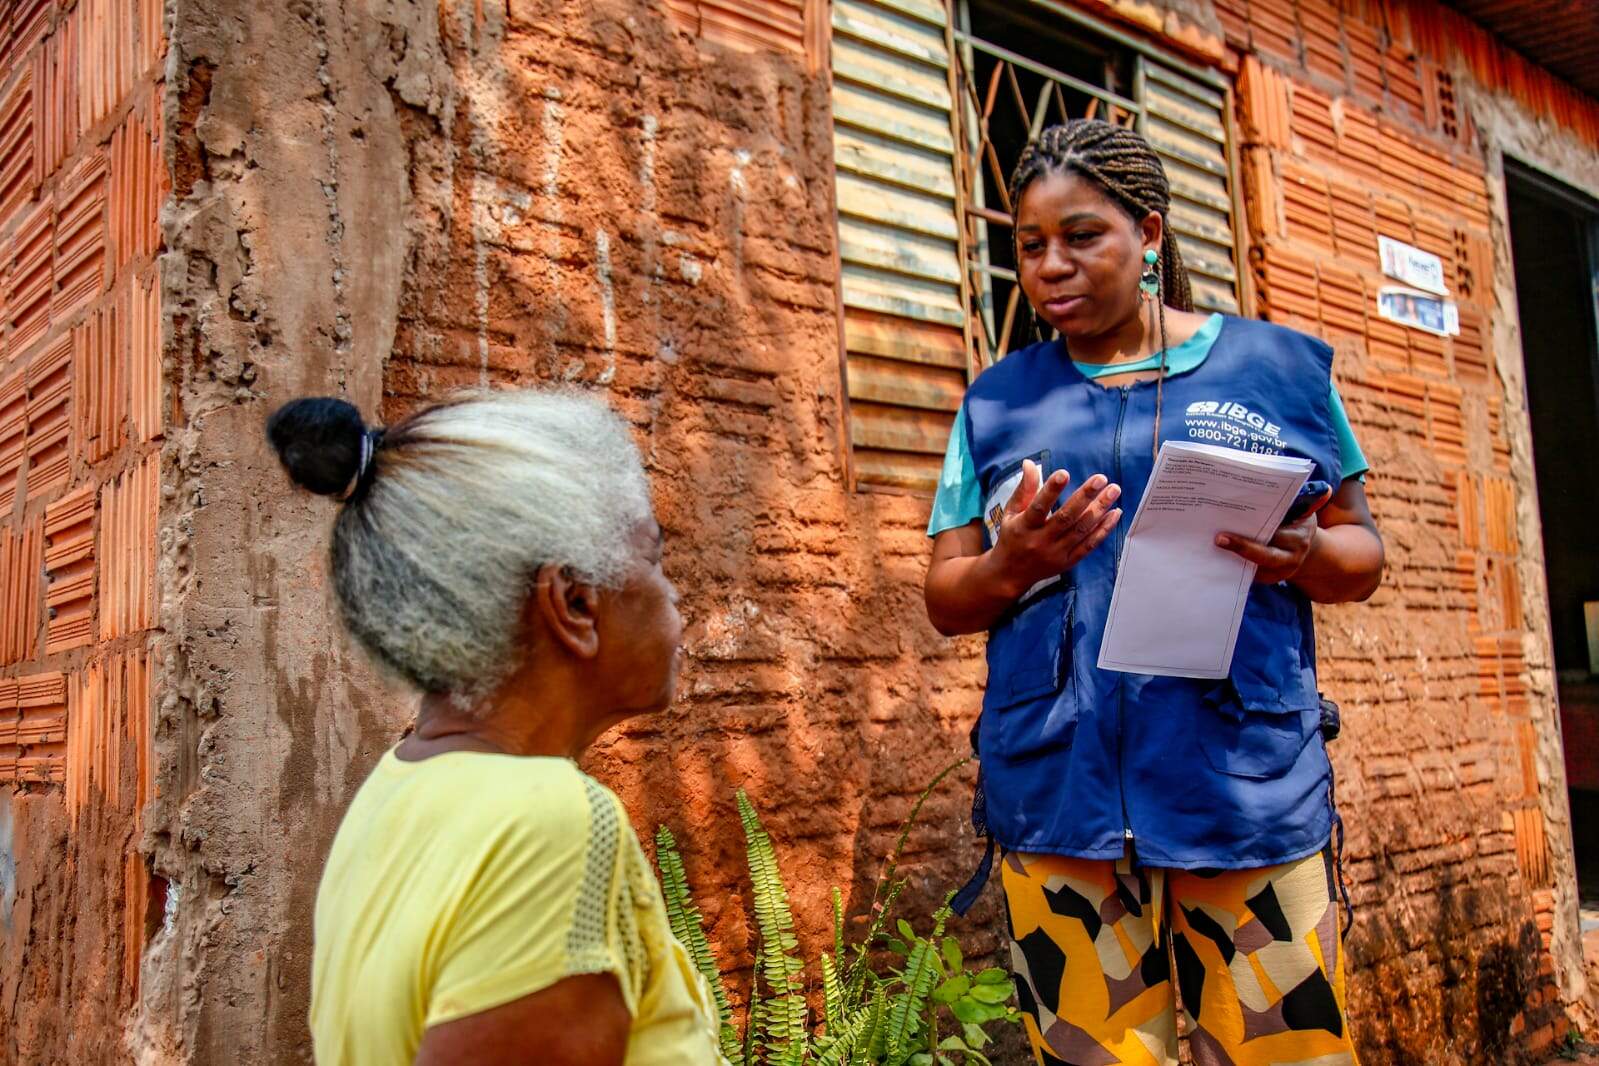 Descendente de quilombolas, Tati foi aprovada pelo IBGE e vai entrevistar a própria comunidade: ‘Fiquei feliz’